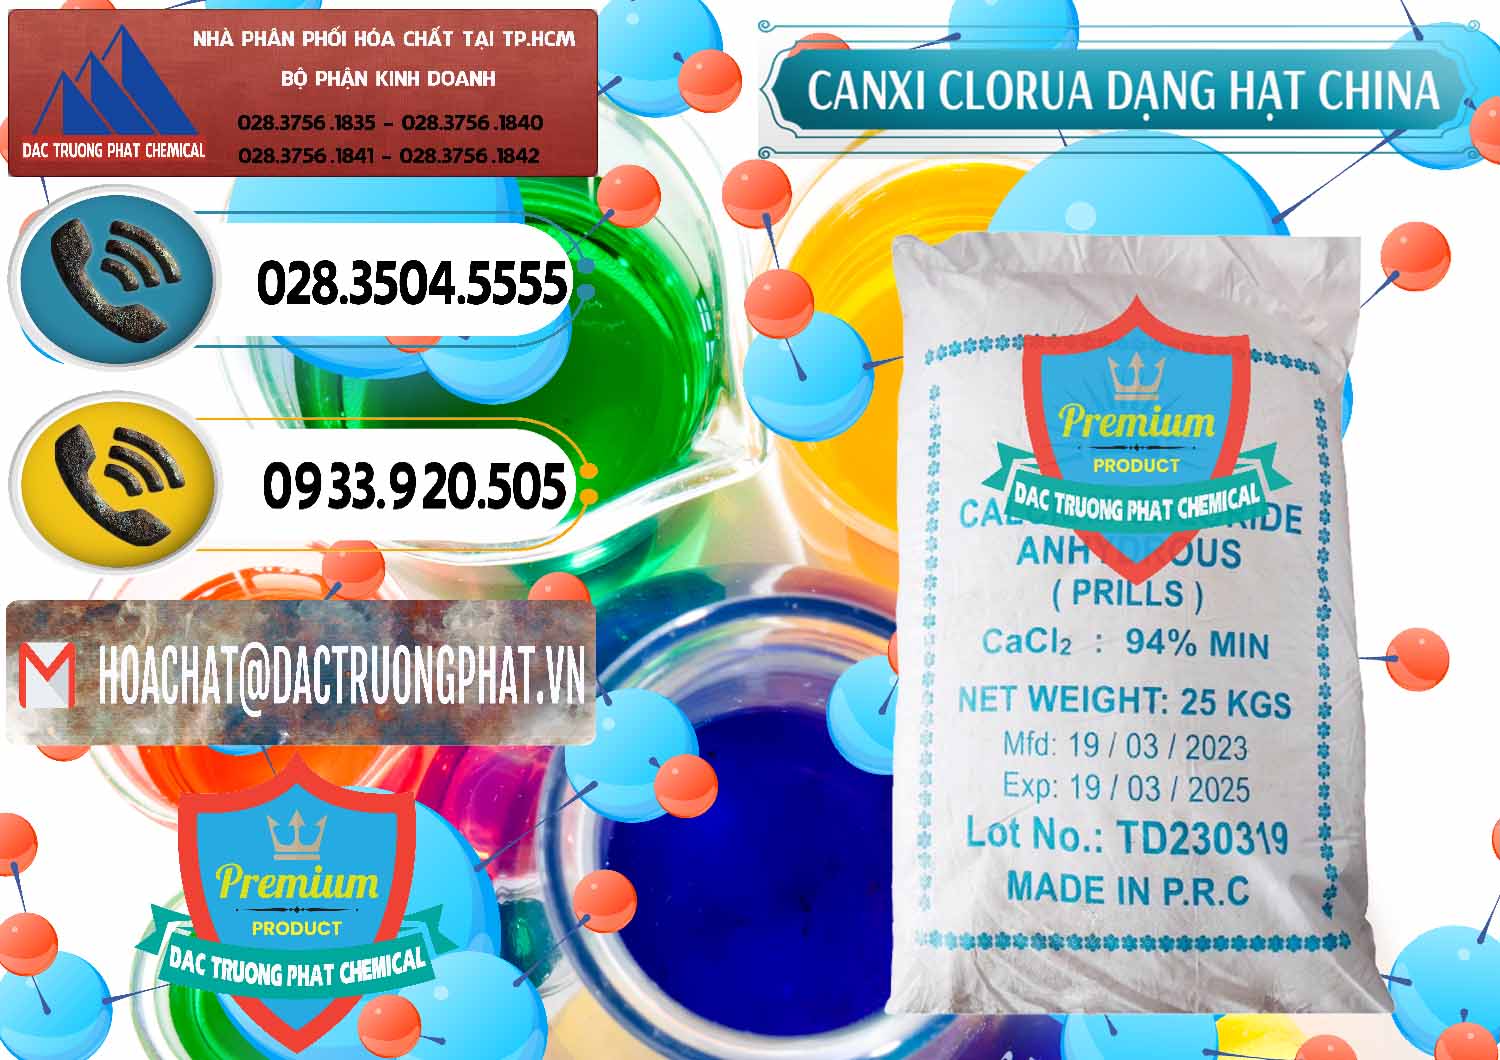 Nơi bán - cung ứng CaCl2 – Canxi Clorua 94% Dạng Hạt Trung Quốc China - 0373 - Nơi chuyên nhập khẩu ( cung cấp ) hóa chất tại TP.HCM - hoachatdetnhuom.vn